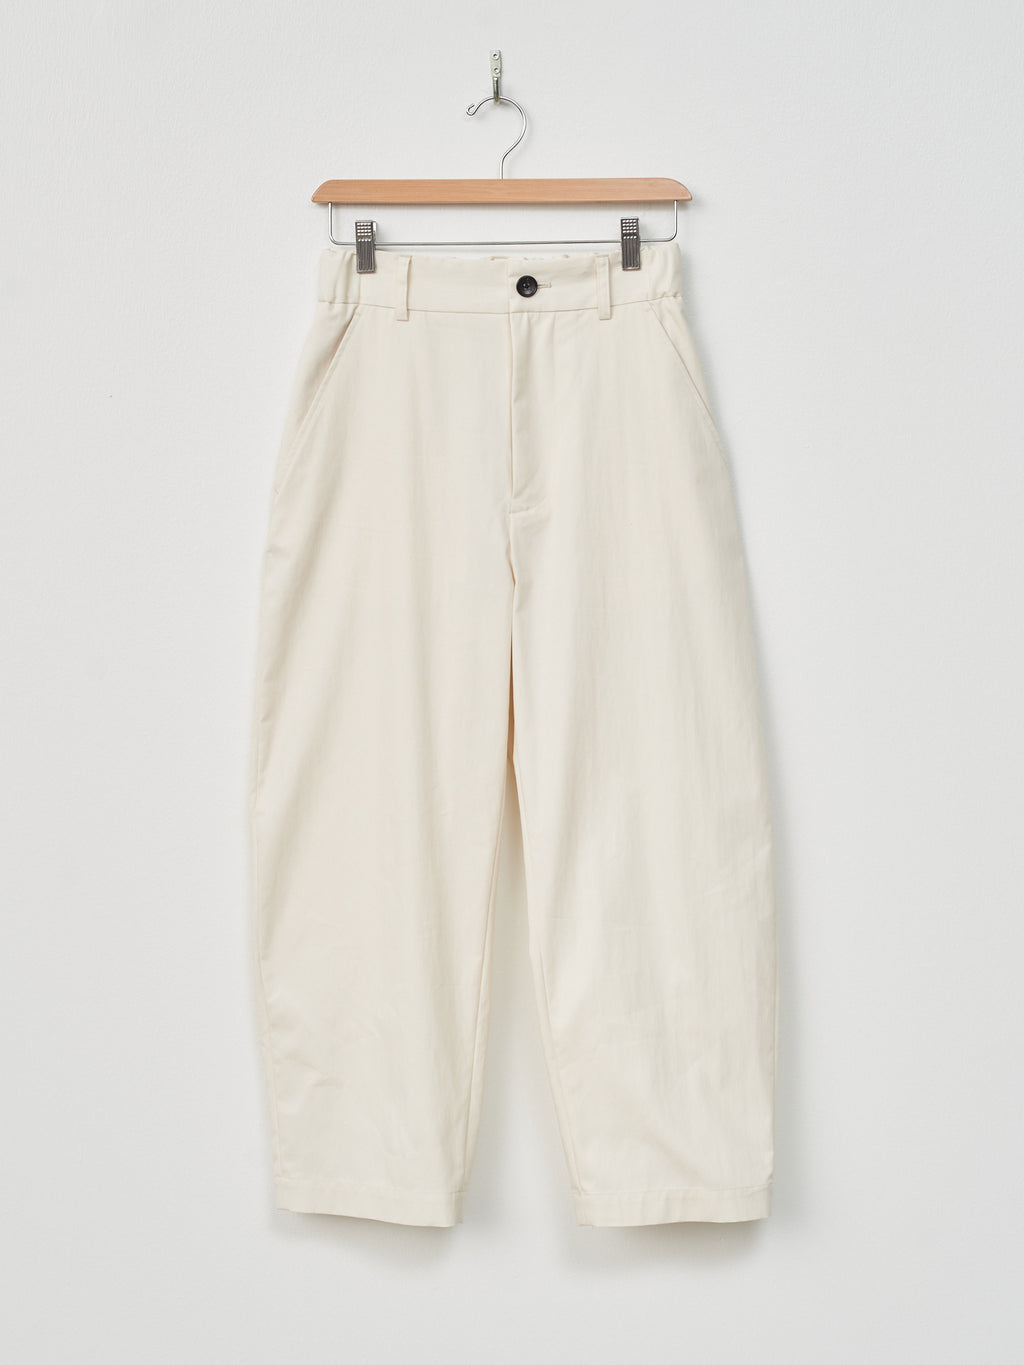 Namu Shop - Nicholson & Nicholson MONT Trouser - Off White